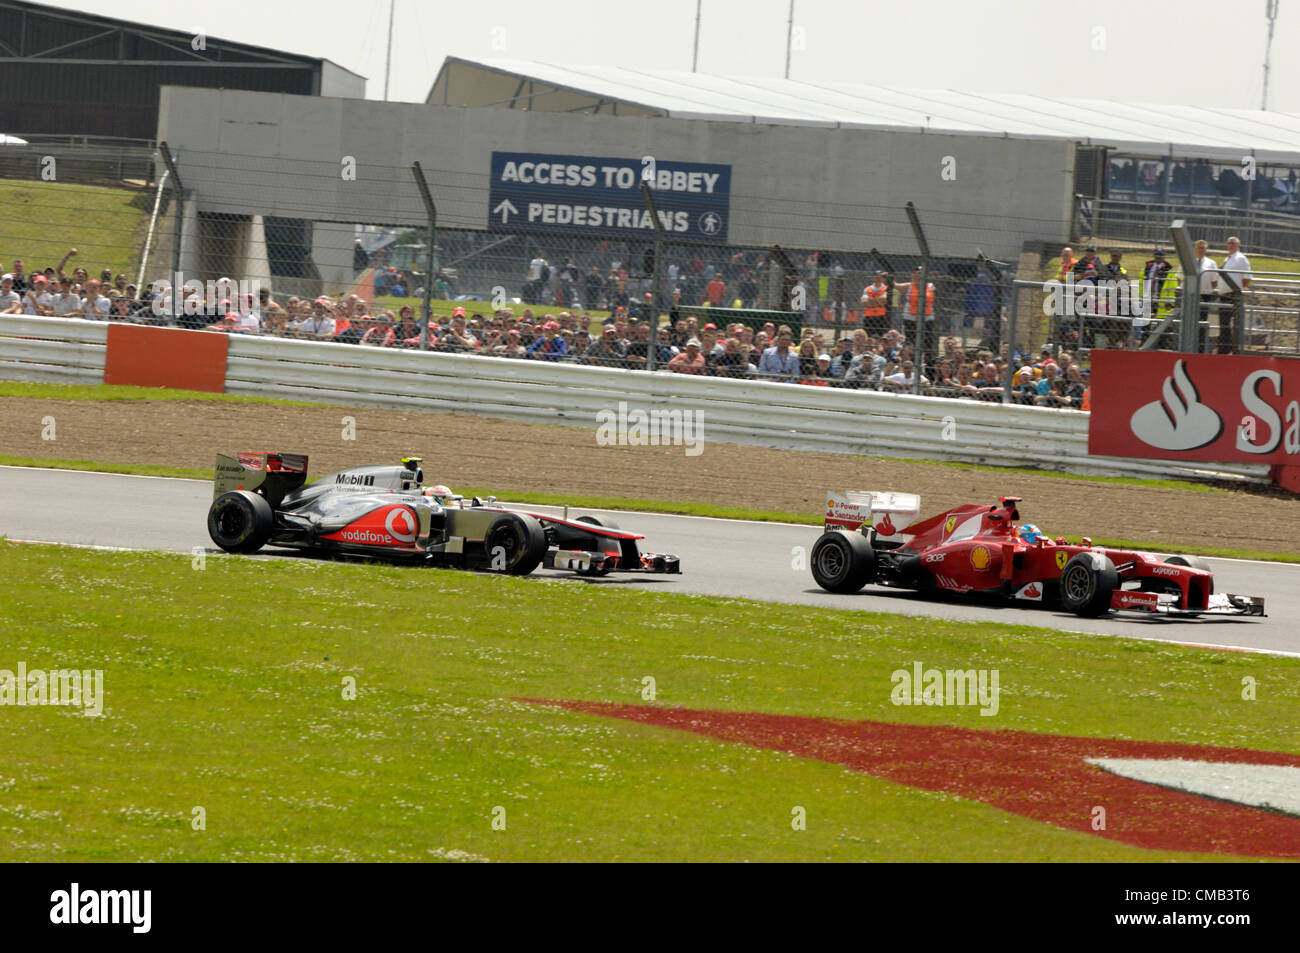 SILVERSTONE, UK, 08 juillet 2012. Lewis Hamilton, Mclaren (gauche) suit la Ferrari de Fernando Alonso (à droite) lors du British Grand Prix de Formule 1 Banque D'Images